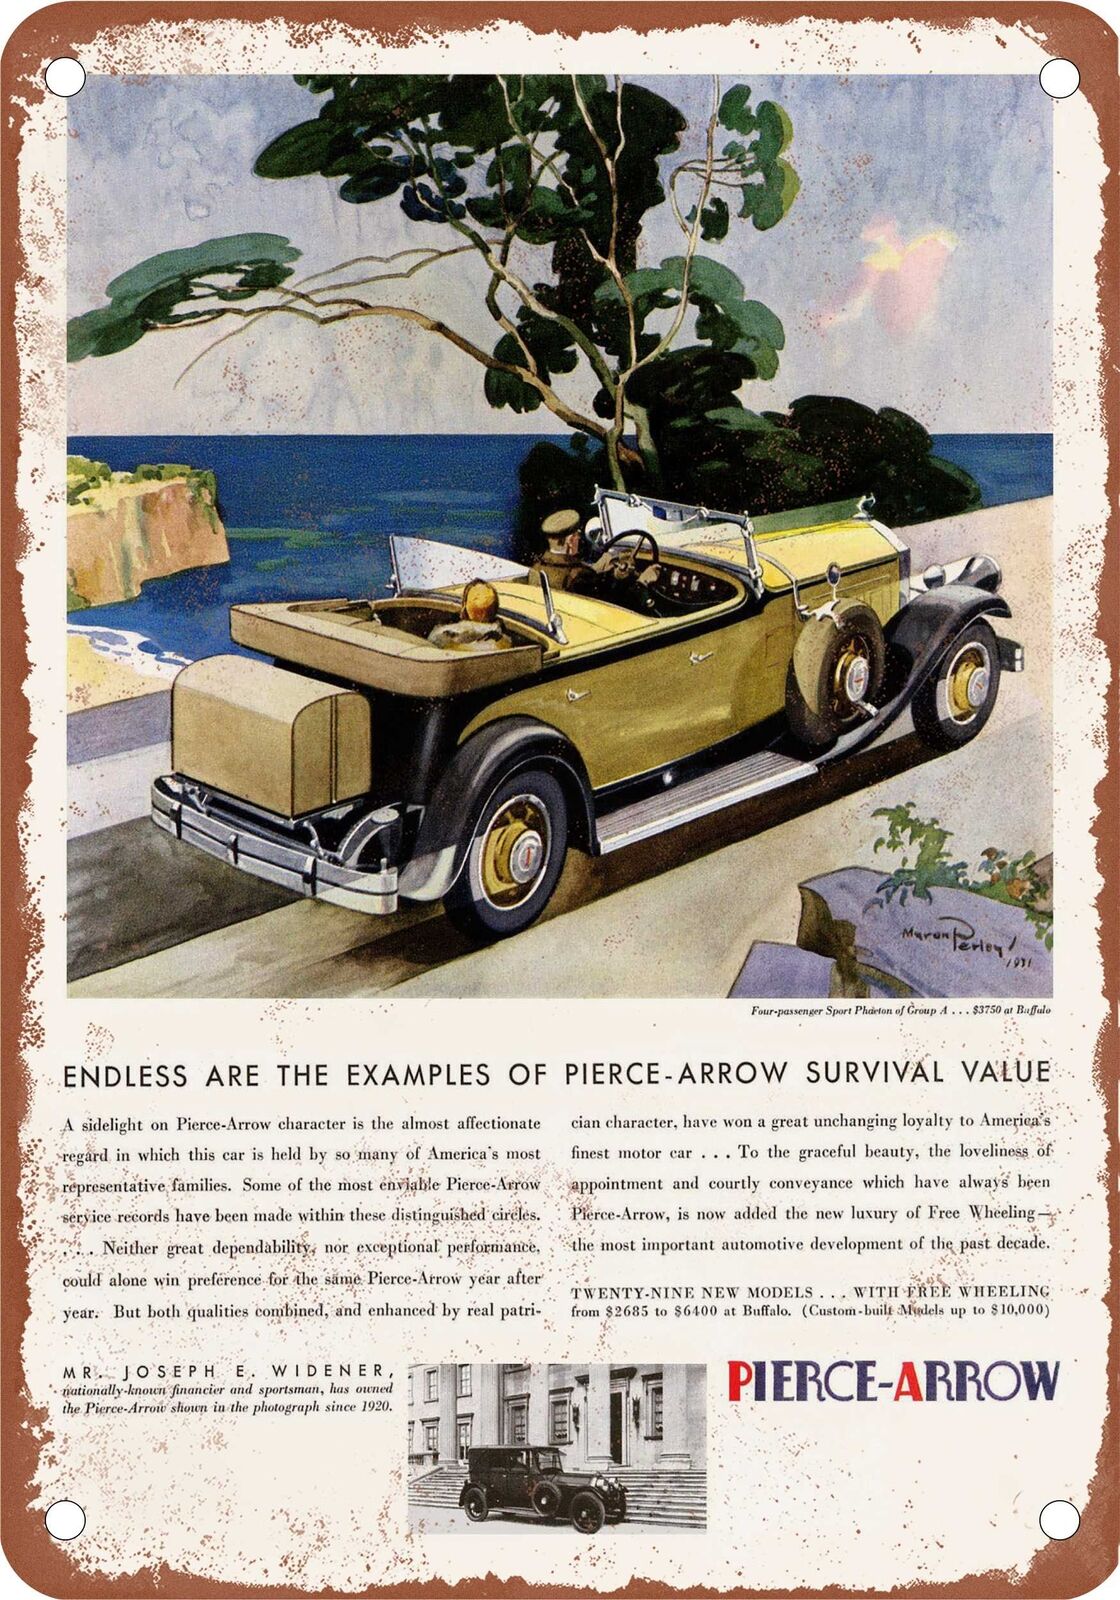 METAL SIGN - 1931 Pierce-Arrow Vintage Ad 05 - Old Retro Rusty Look